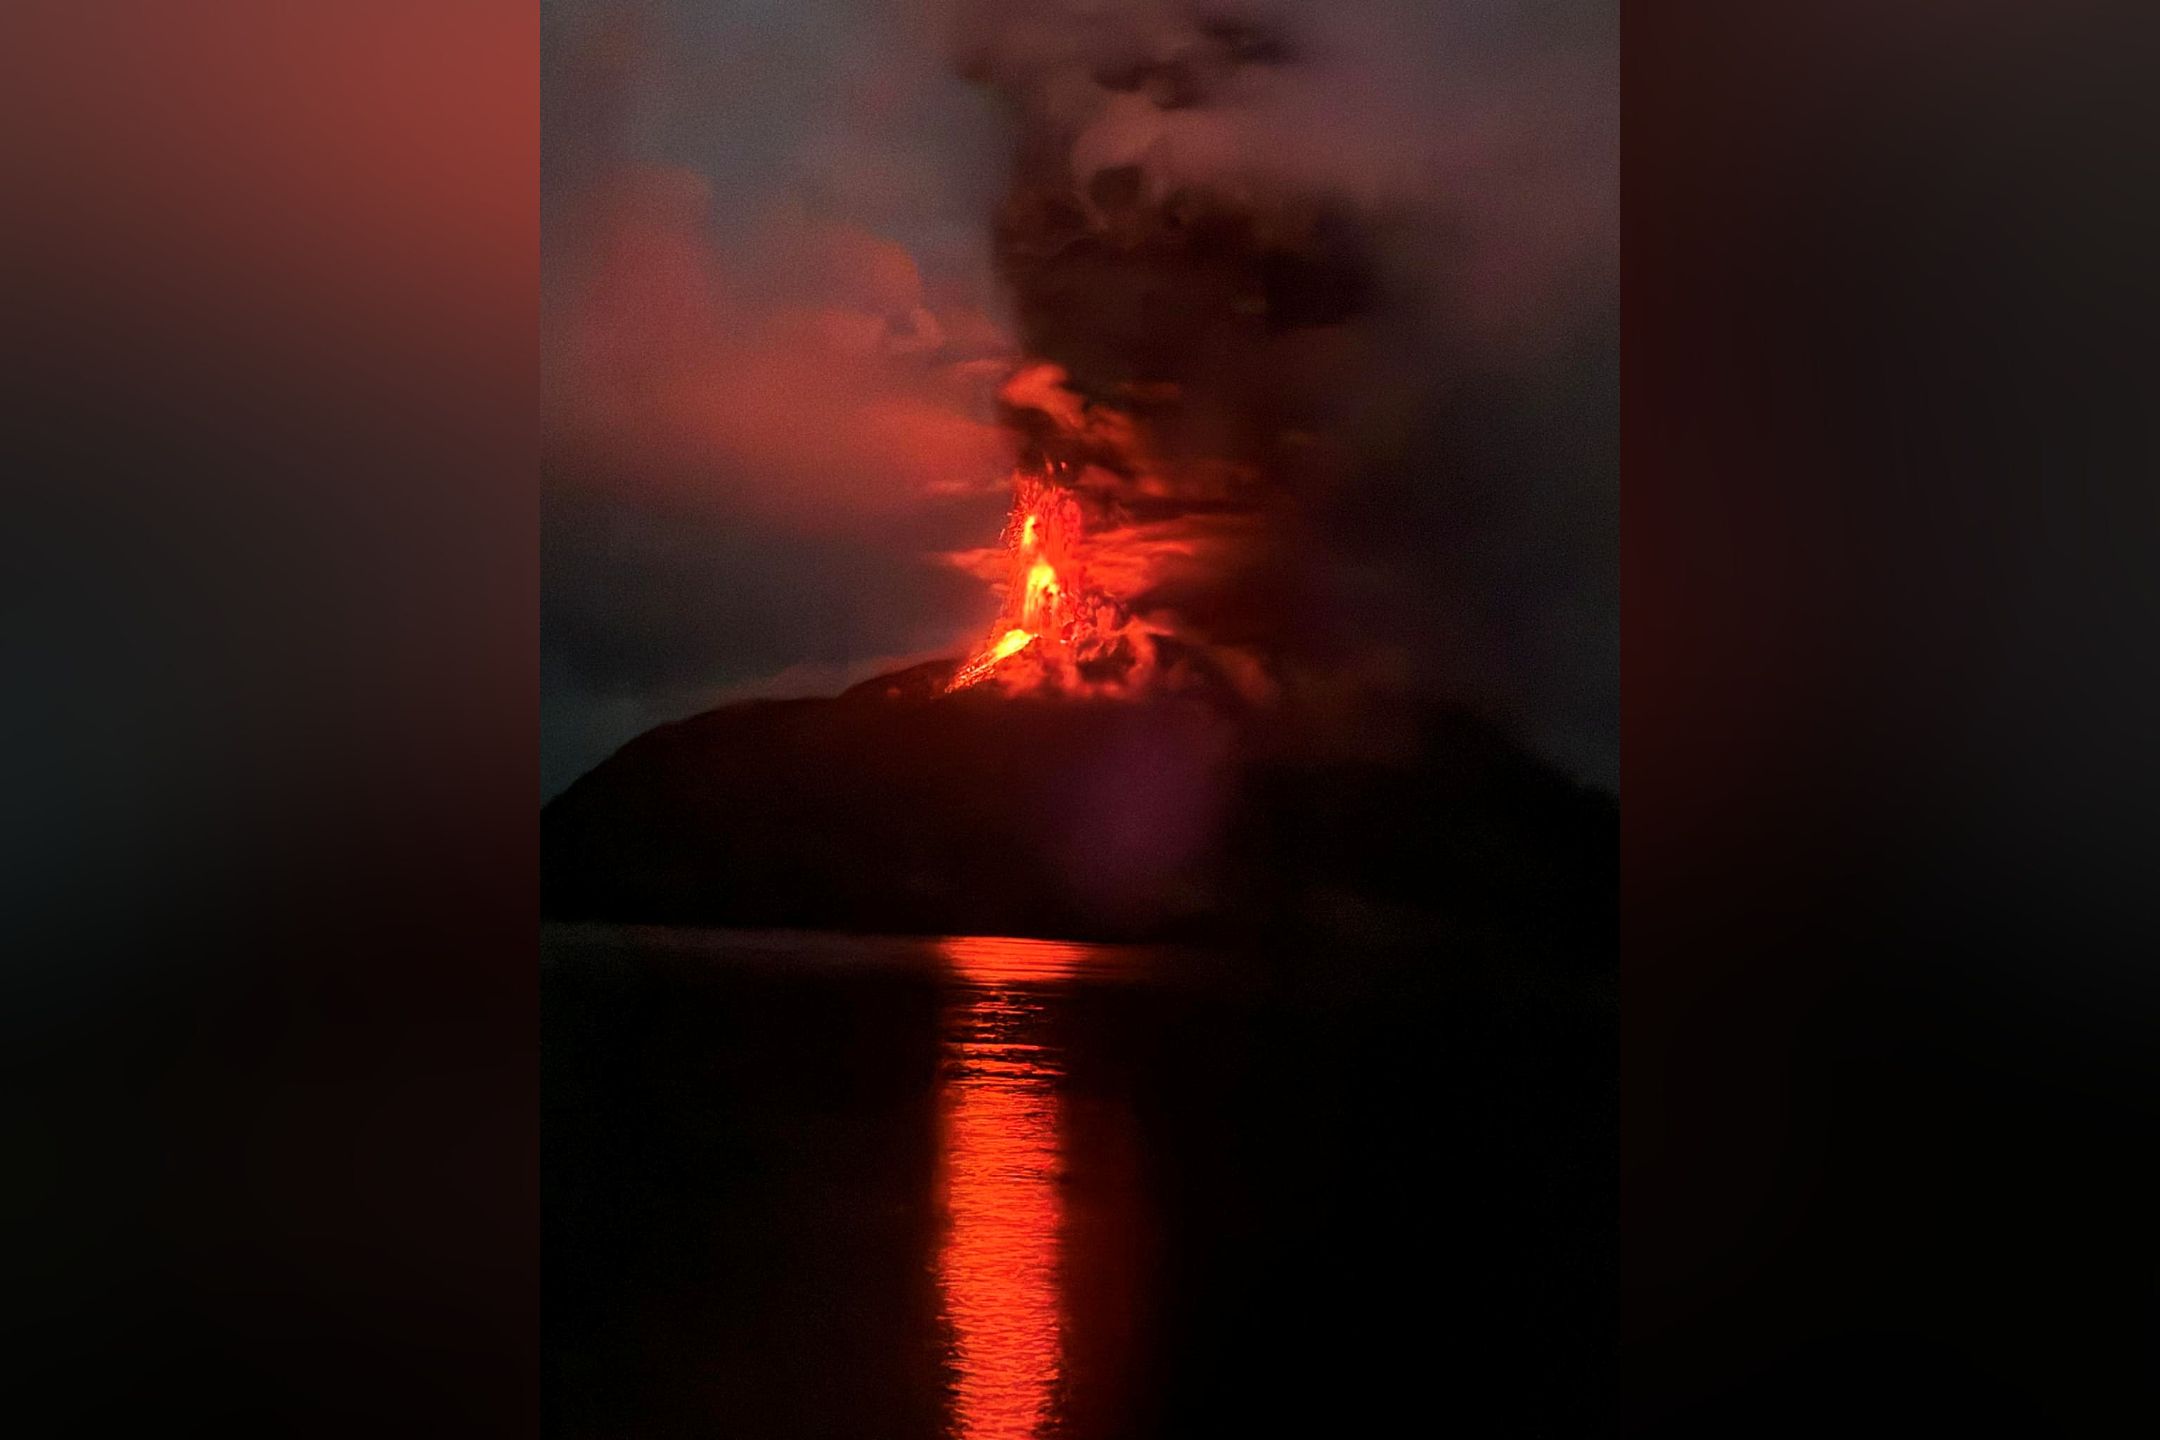 鲁昂火山灰料飘至亚庇 气象局发航空气象预警